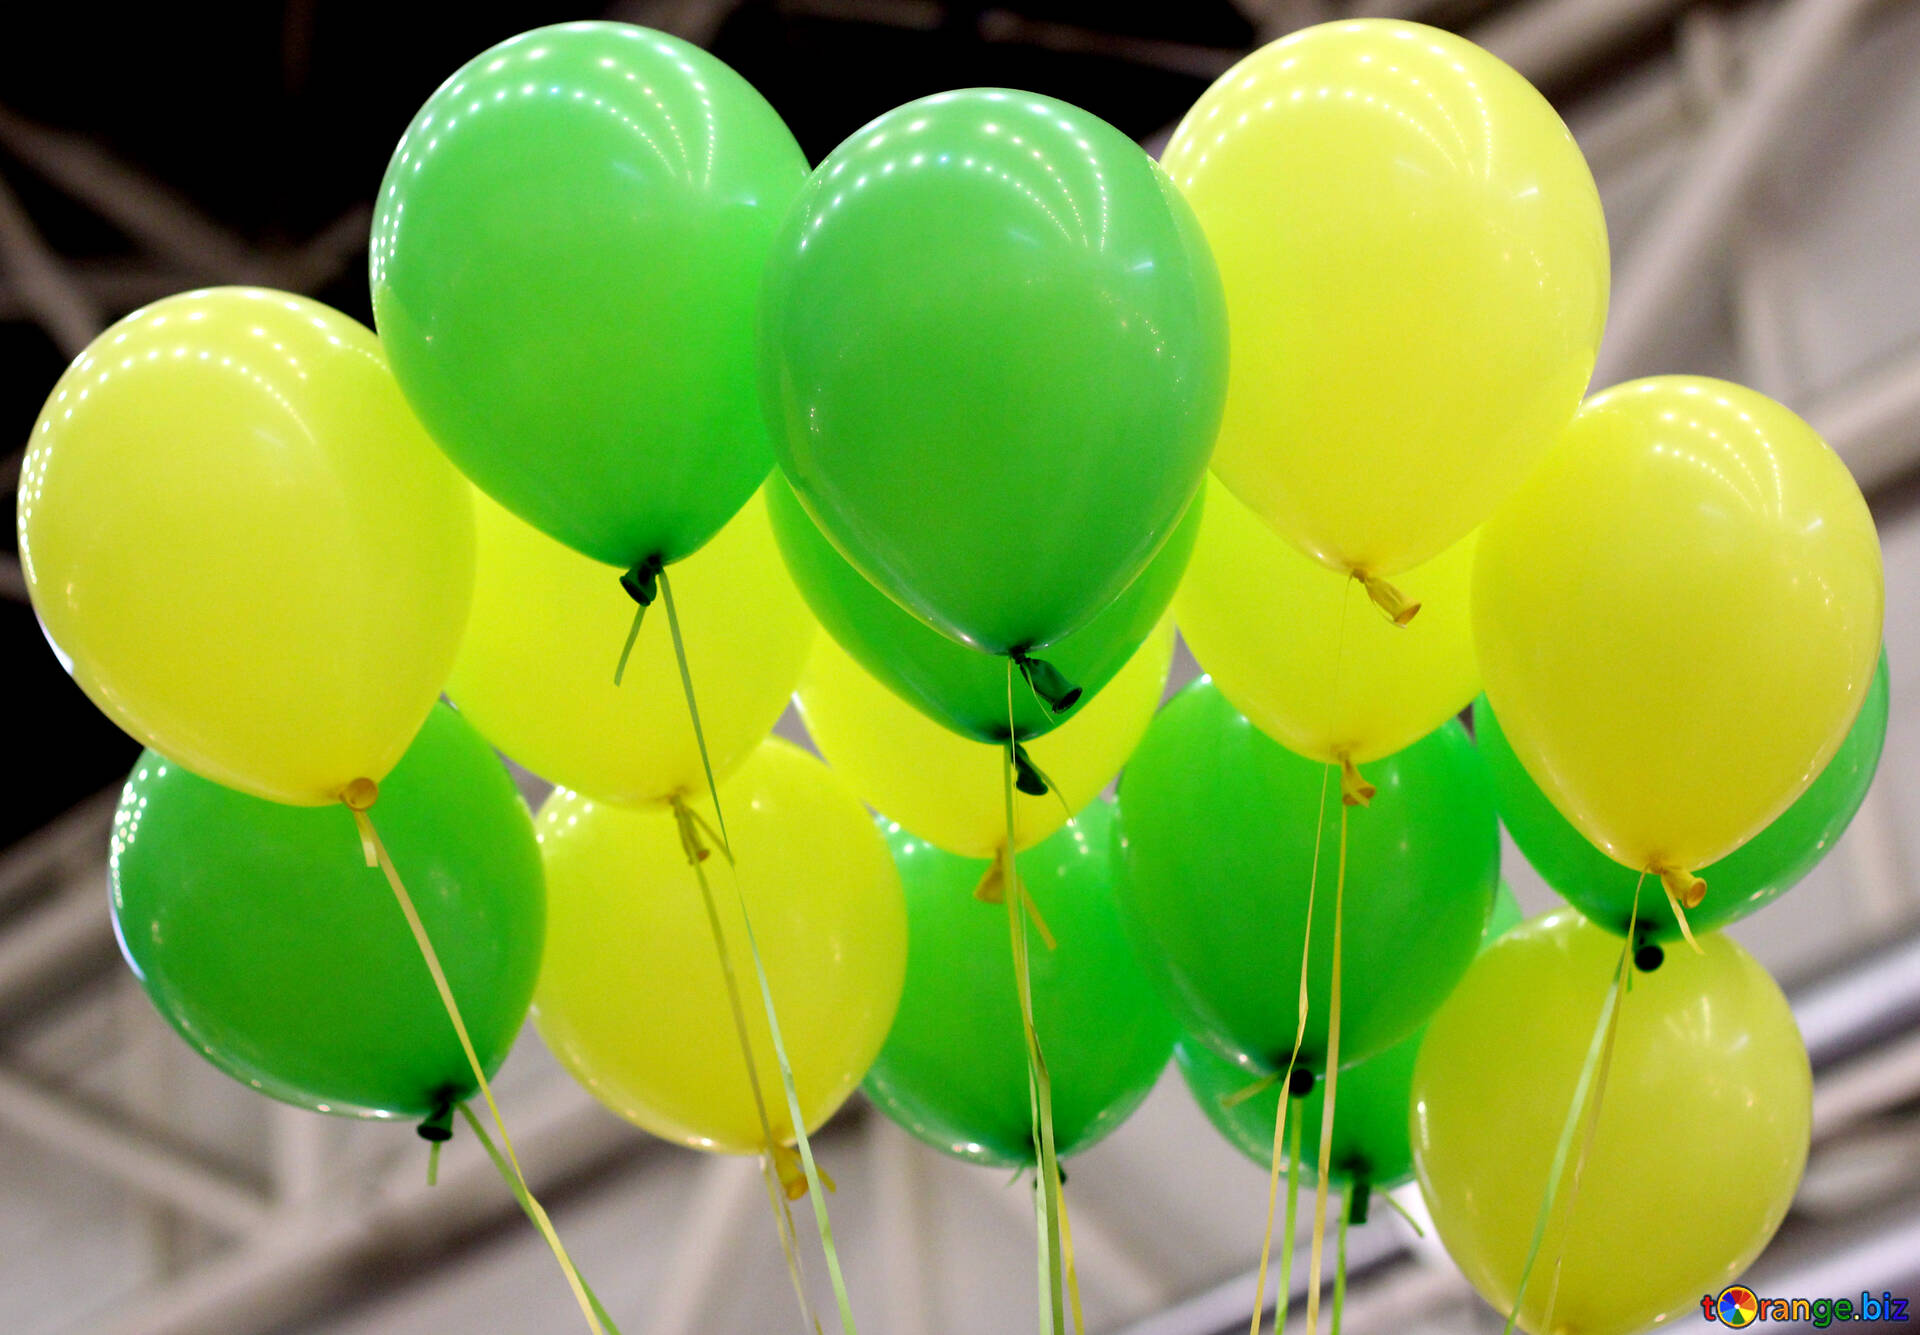 Черно зеленые шарики. Воздушный шарик. Яркие воздушные шары. Желтые воздушные шары. Воздушные шары в зеленых тонах.